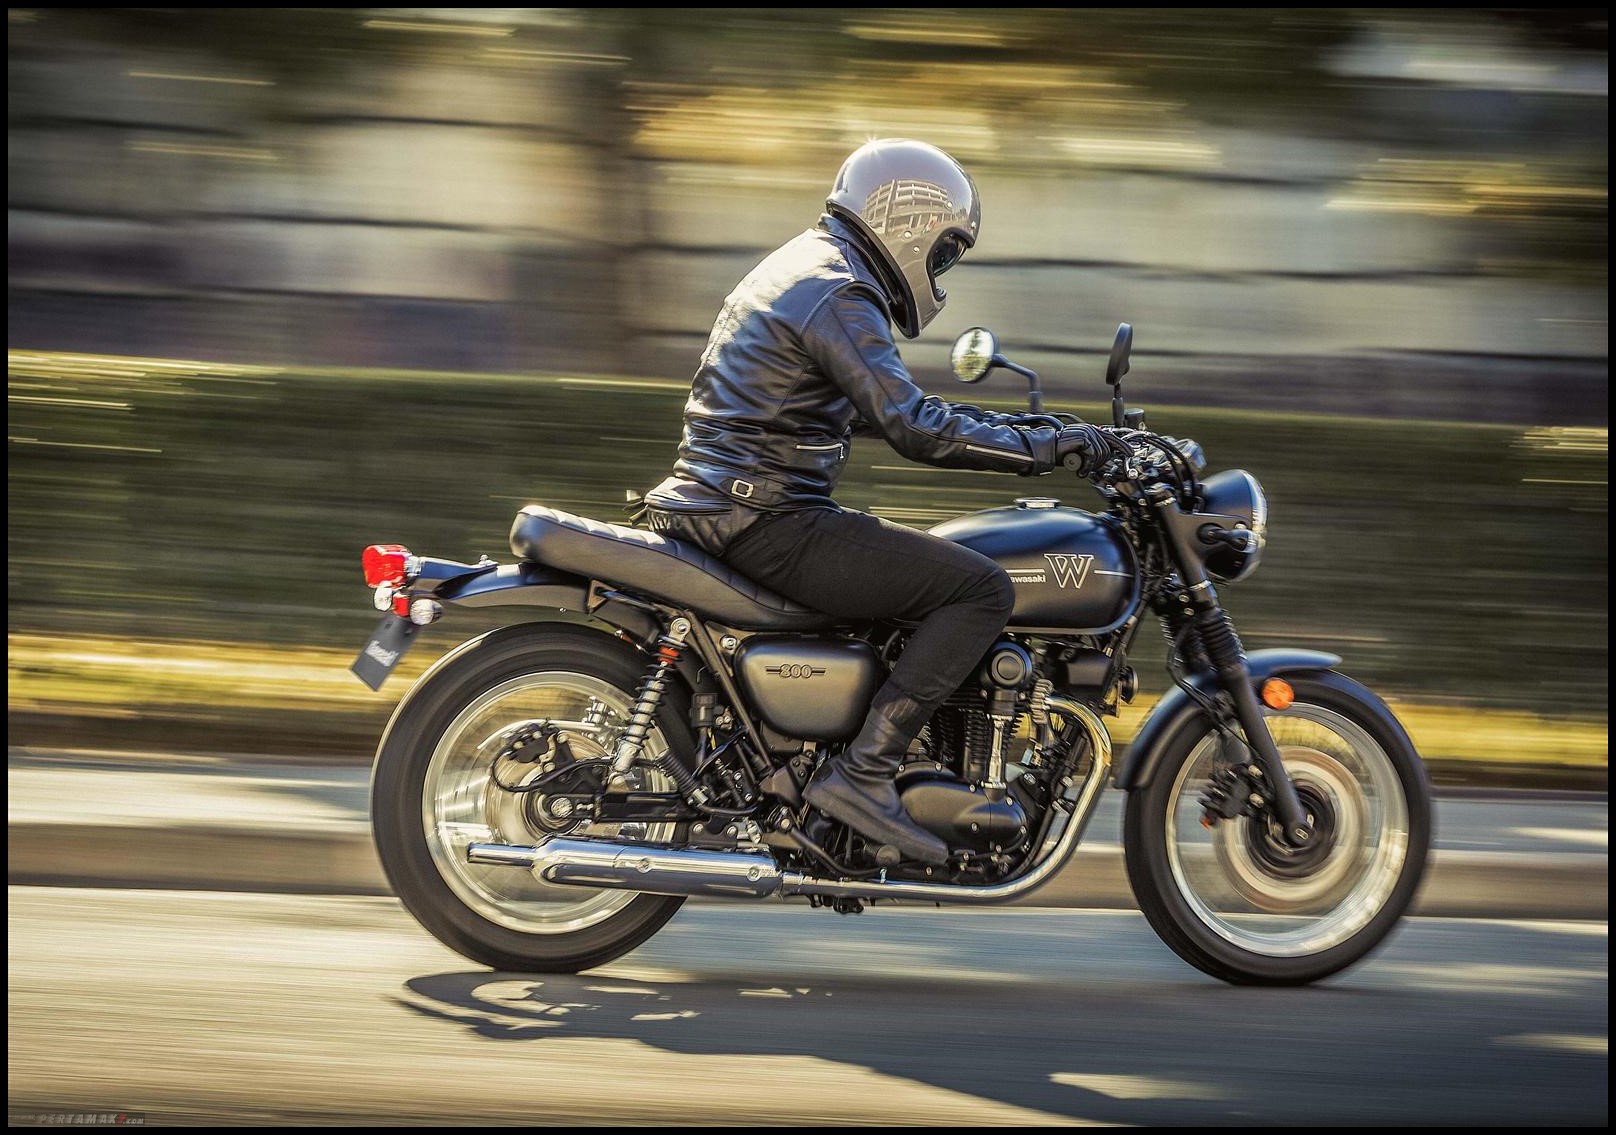 ✅ тест-драйв мотоцикла tm en 300, путешествия на мотоцикле и не только - craitbikes.ru